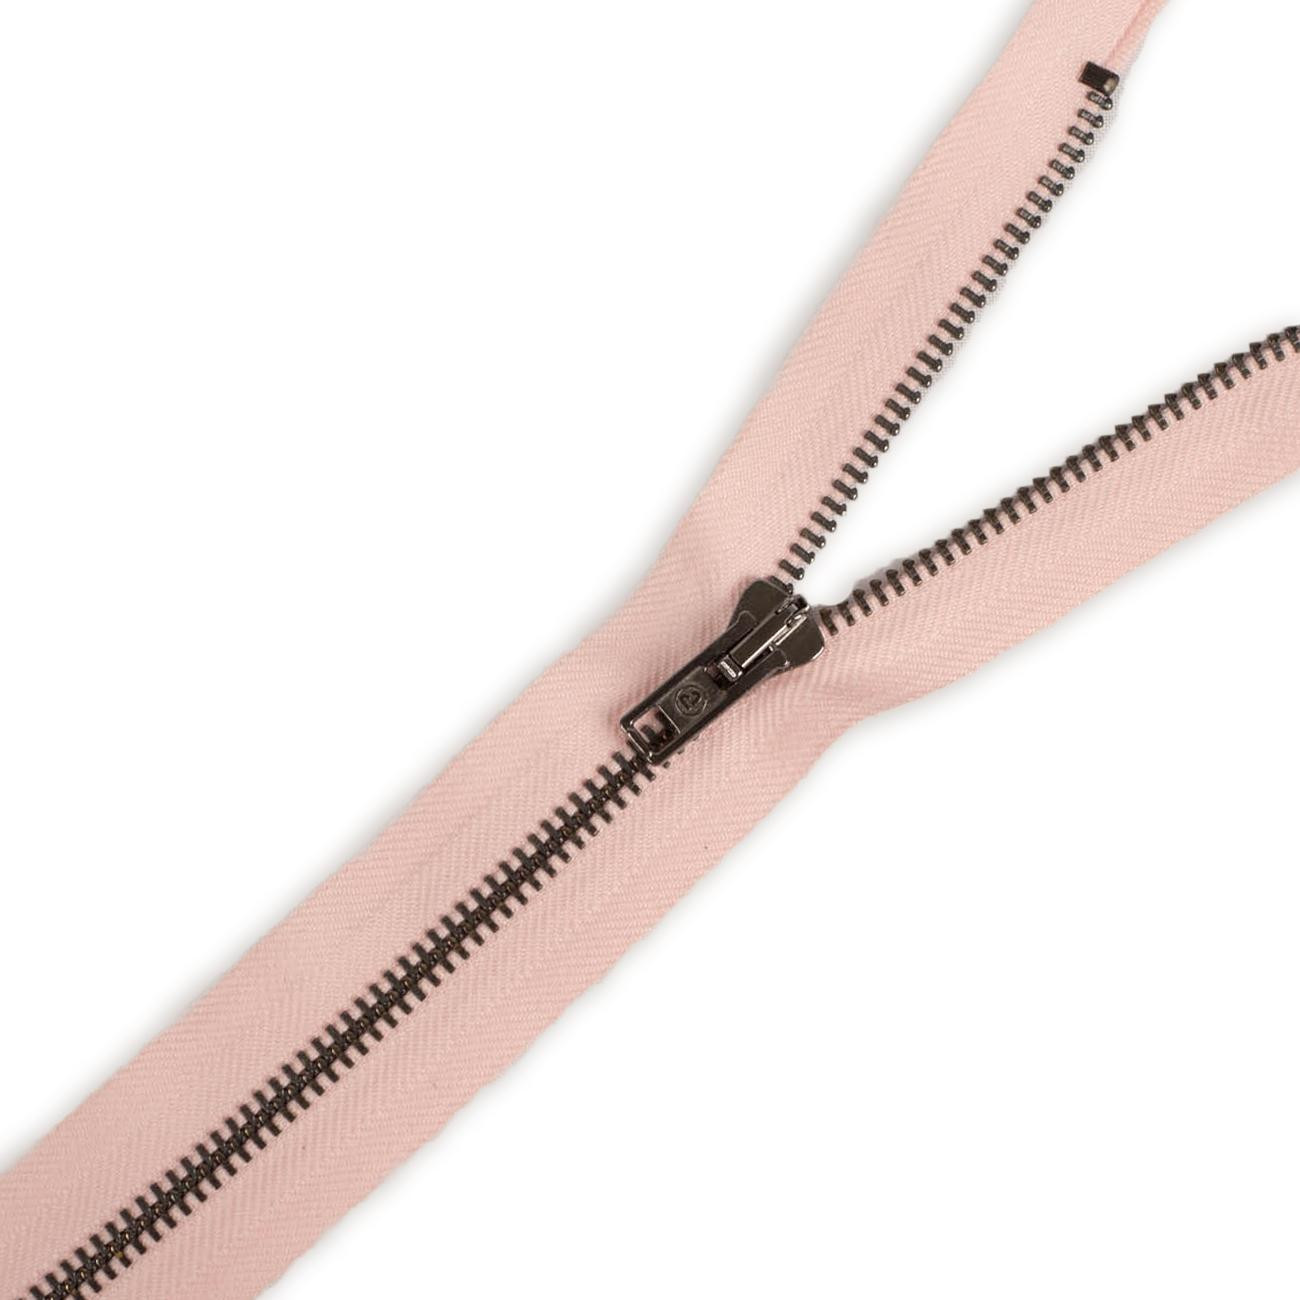 Metal zipper closed-end 14cm – pale pink / black nickel